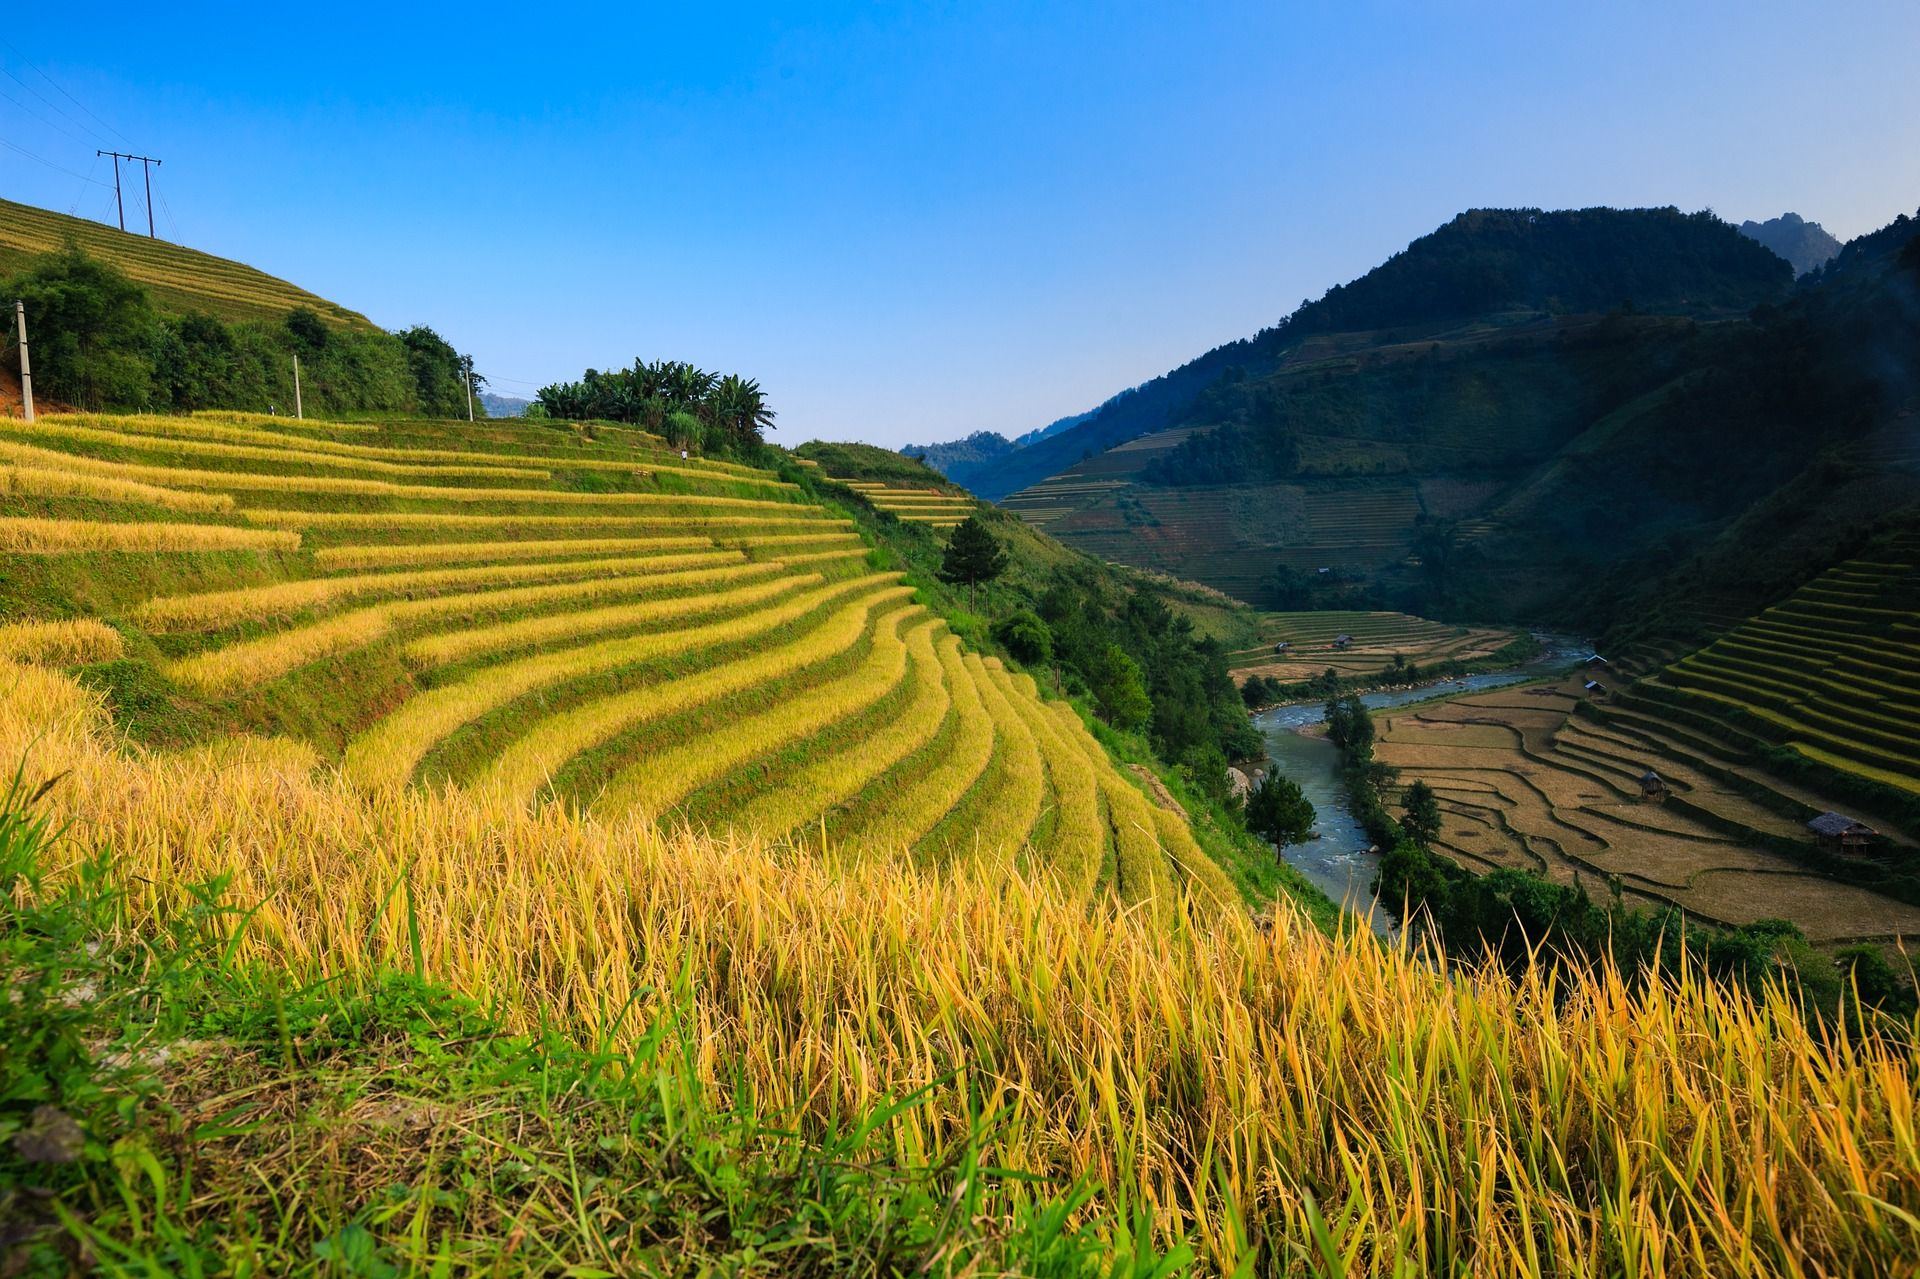 אורז הוא הגידול השלישי בתפוצתו בעולם אחרי תירס וחיטה, וסביר להניח שיישאר בסביבה עוד שנים רבות. צילום pixabay